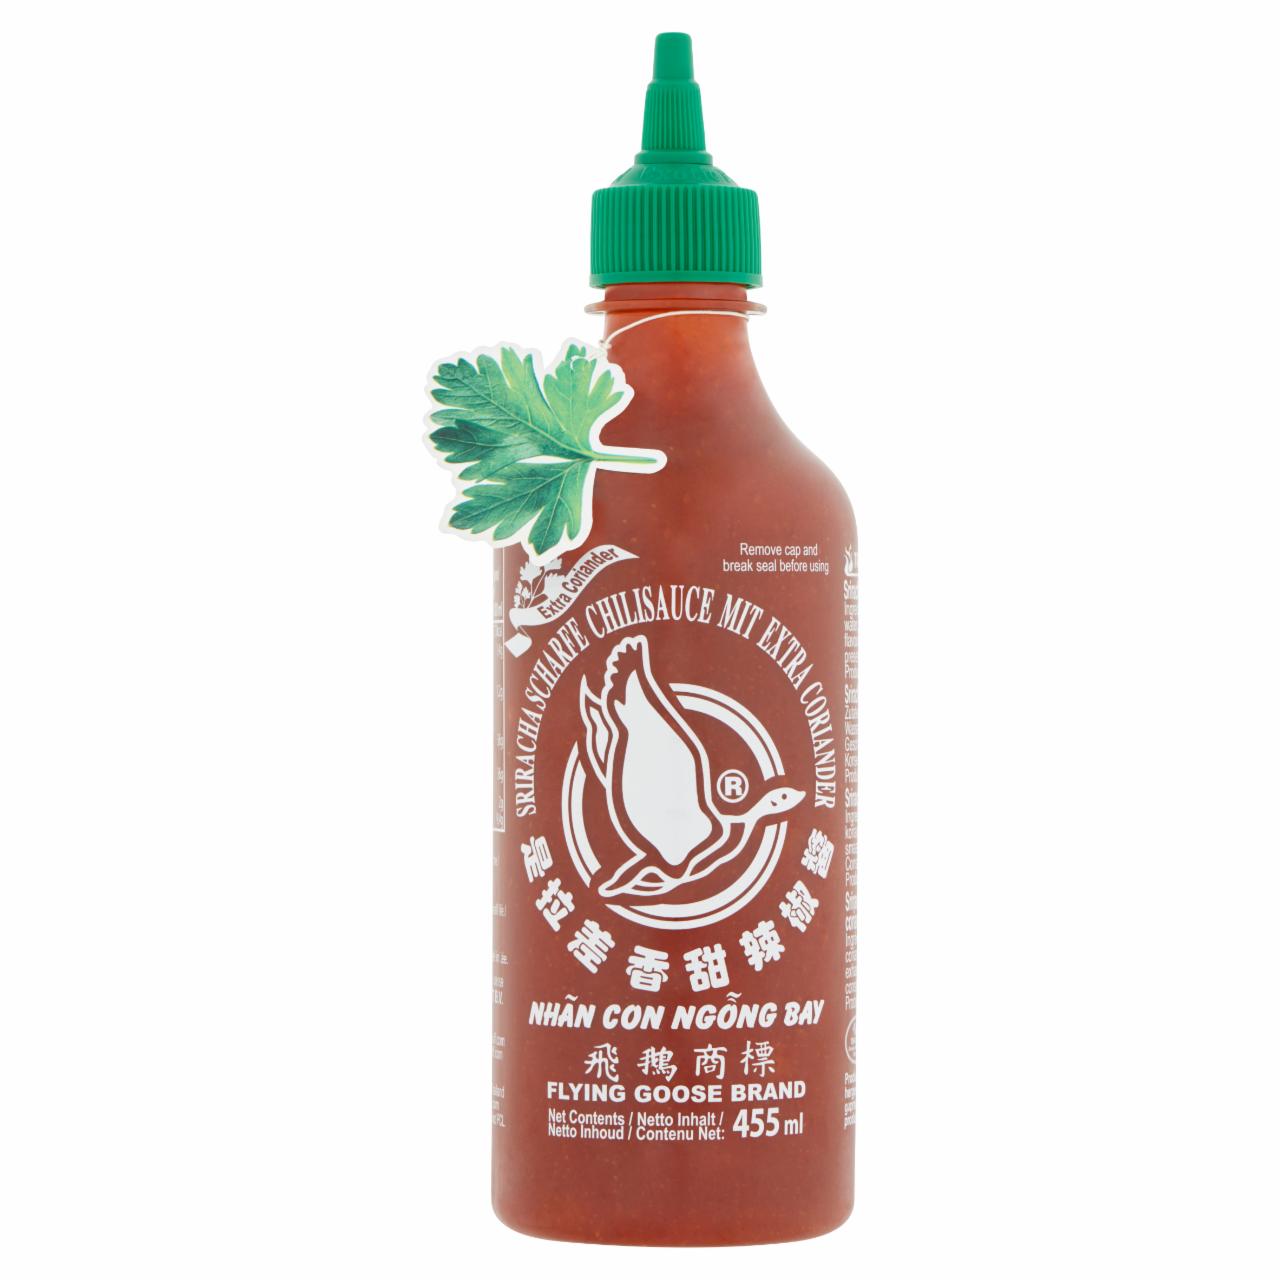 Képek - Flying Goose Brand Sriracha csípős chili szósz extra korianderrel 455 ml